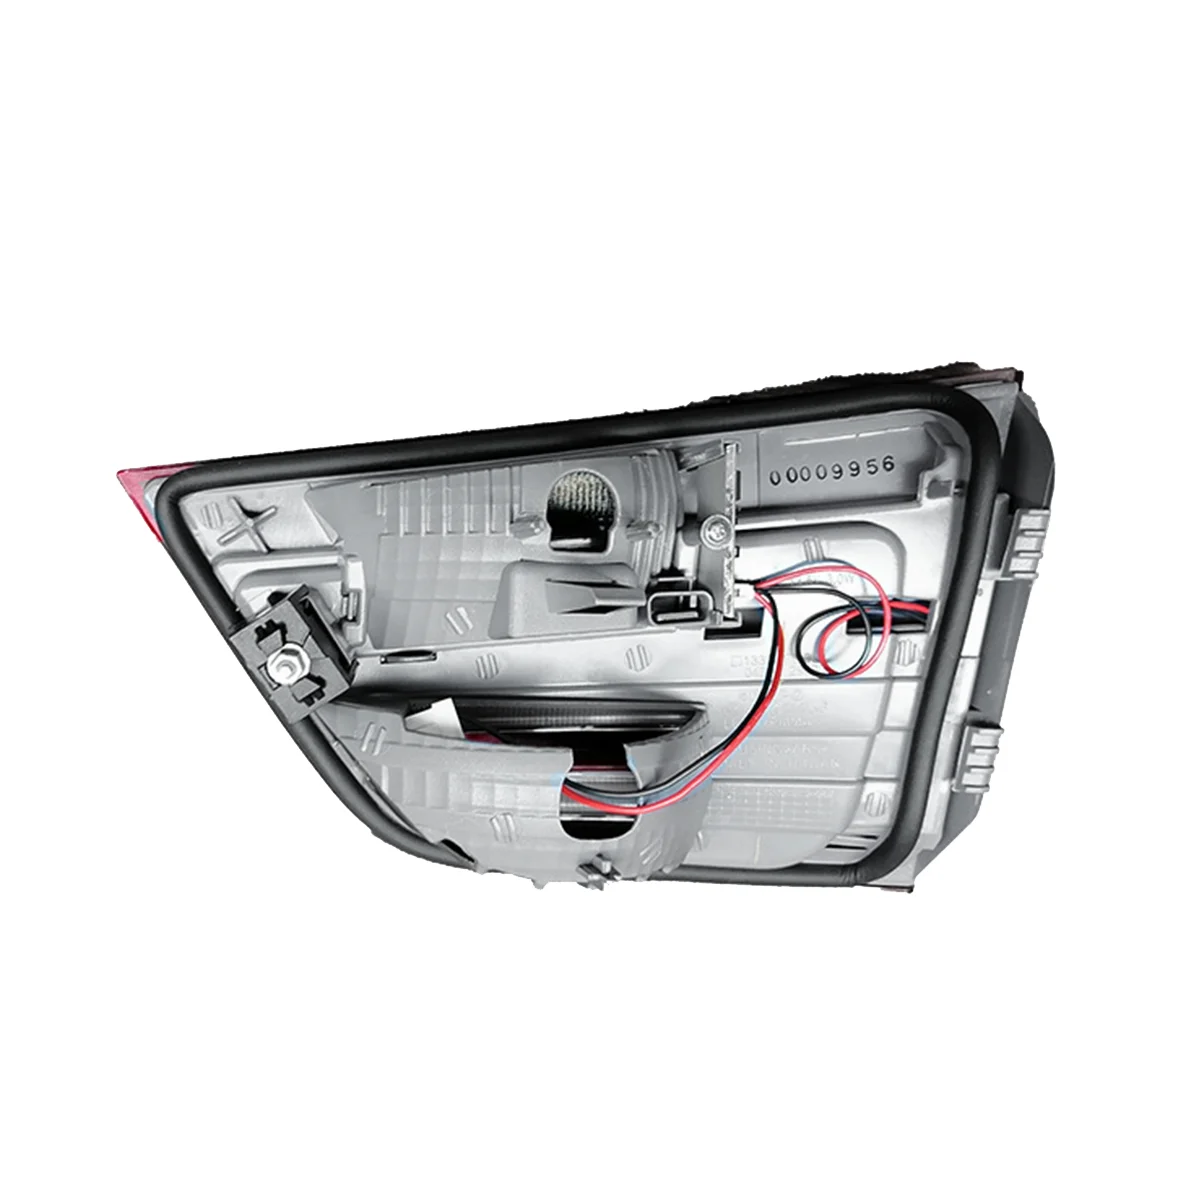 

63217217314 Right Rear LED Lamp Trim Bezel Shell Reversing Signal Brake Light for BMW X3 F25 2009-2017 Tail Light Cover